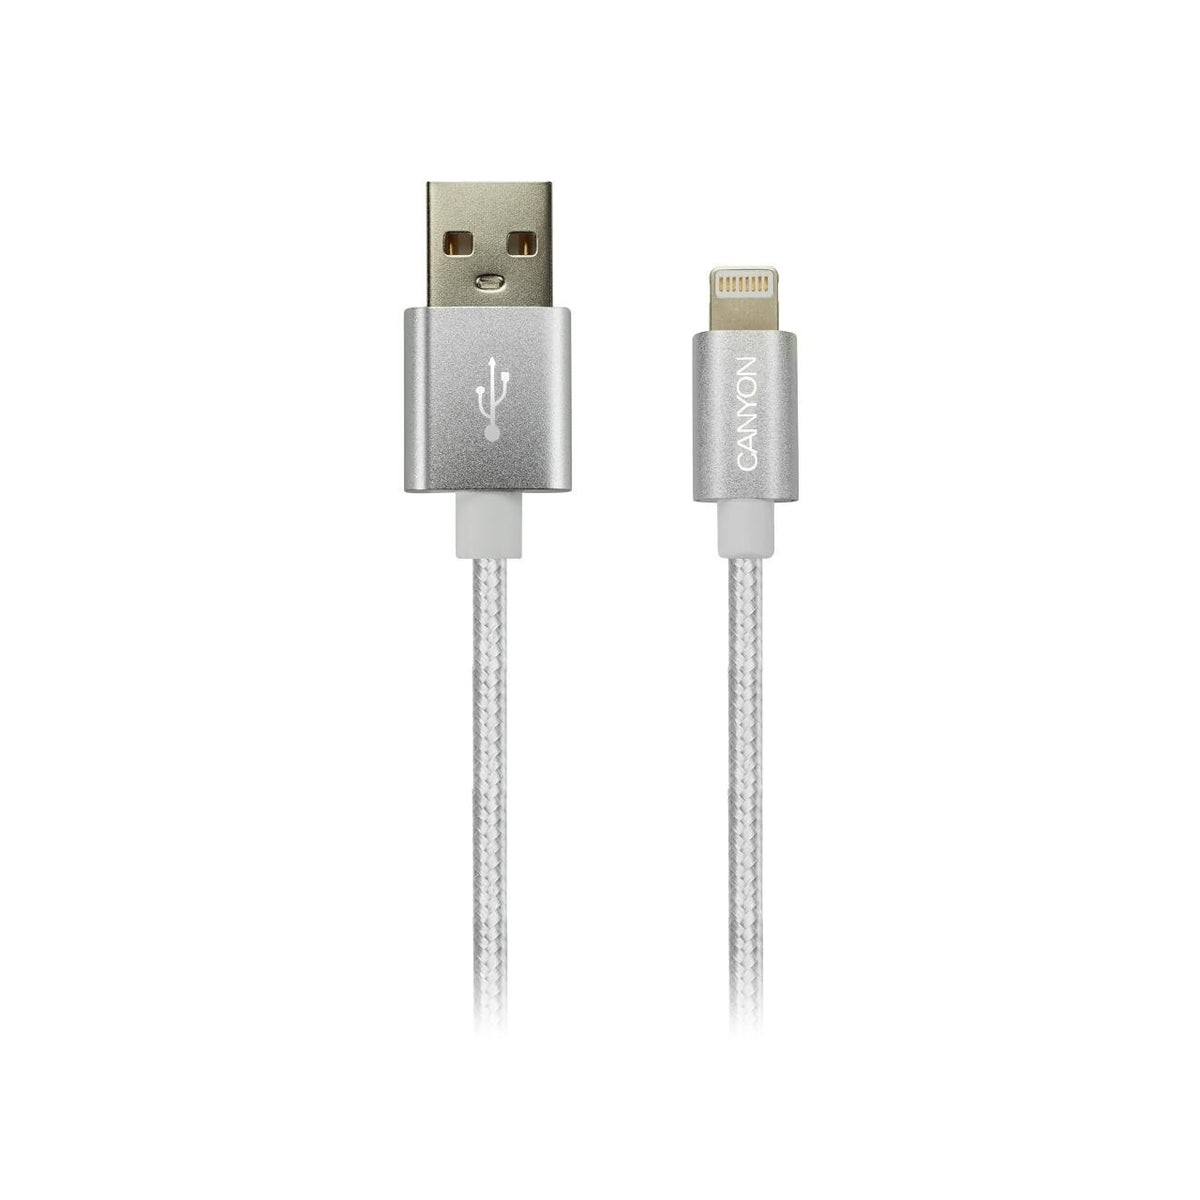 Kabel Canyon Lightning na USB, 1m, pletený, bílá